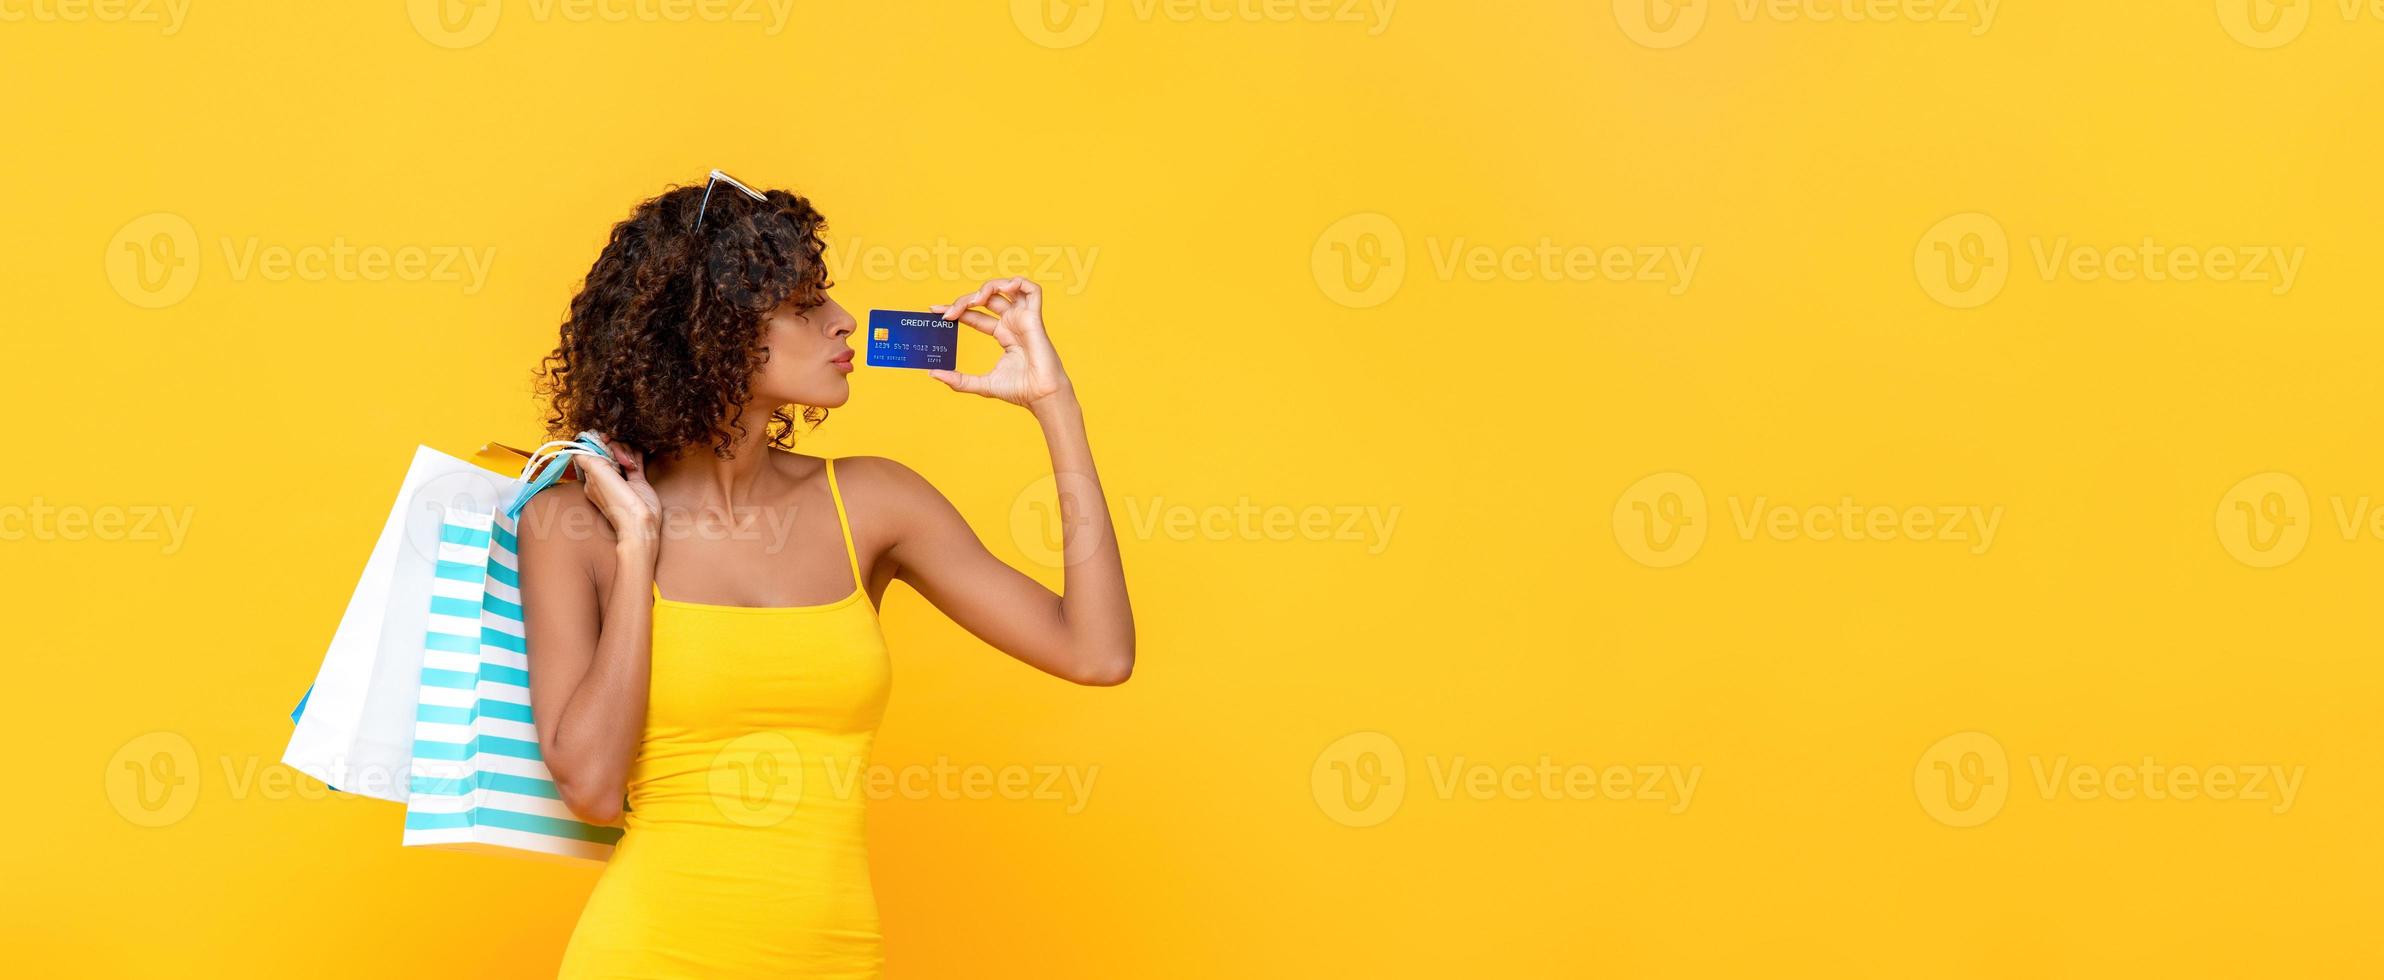 fashionabla lockigt hår kvinna som bär shoppingkassar med kreditkort på gul banner bakgrund med kopia utrymme foto